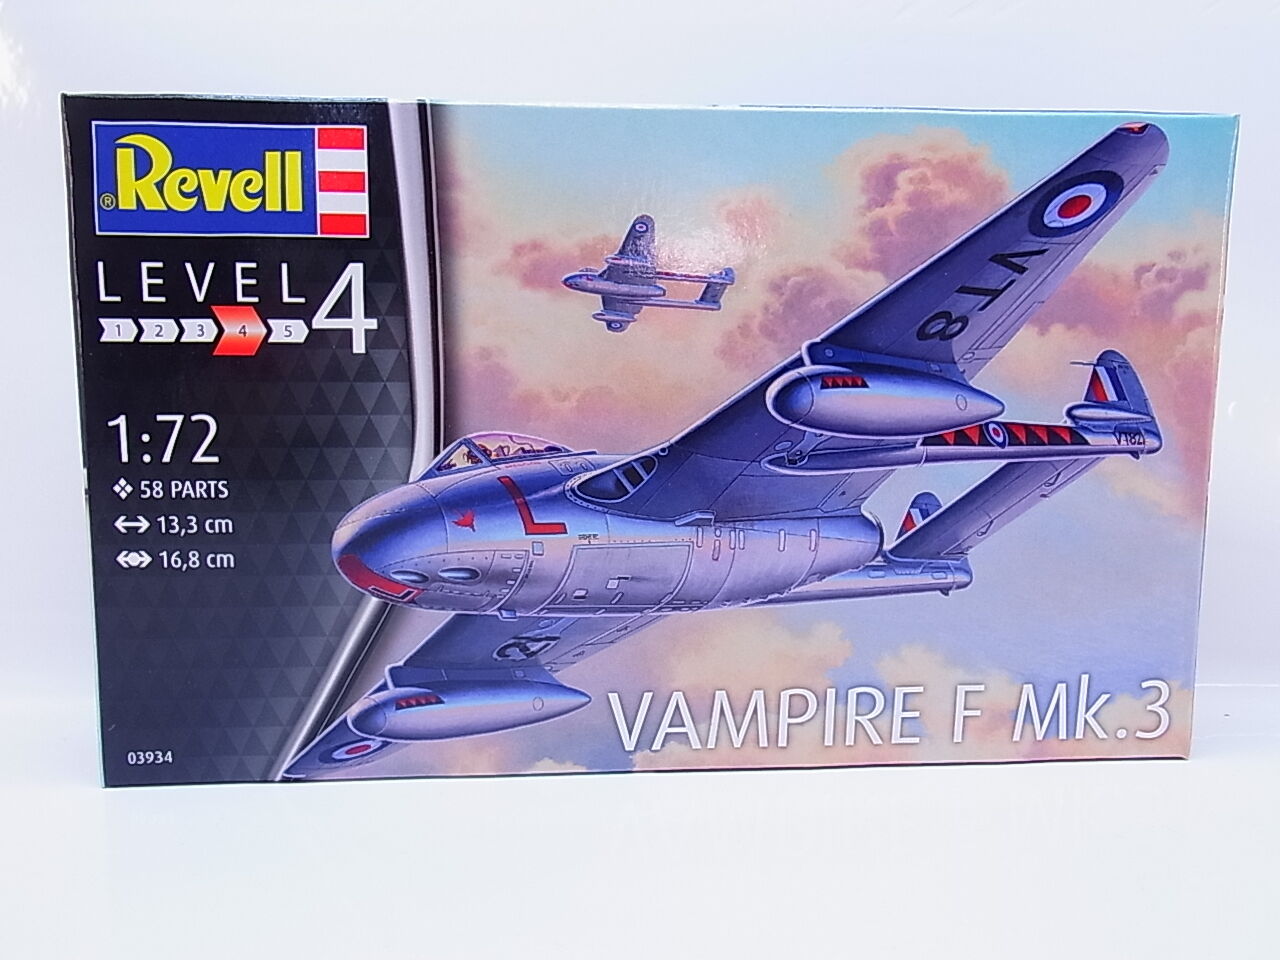 Lot 43711 revell 03934 f mk.3 1:72 vampire kit new original packaging